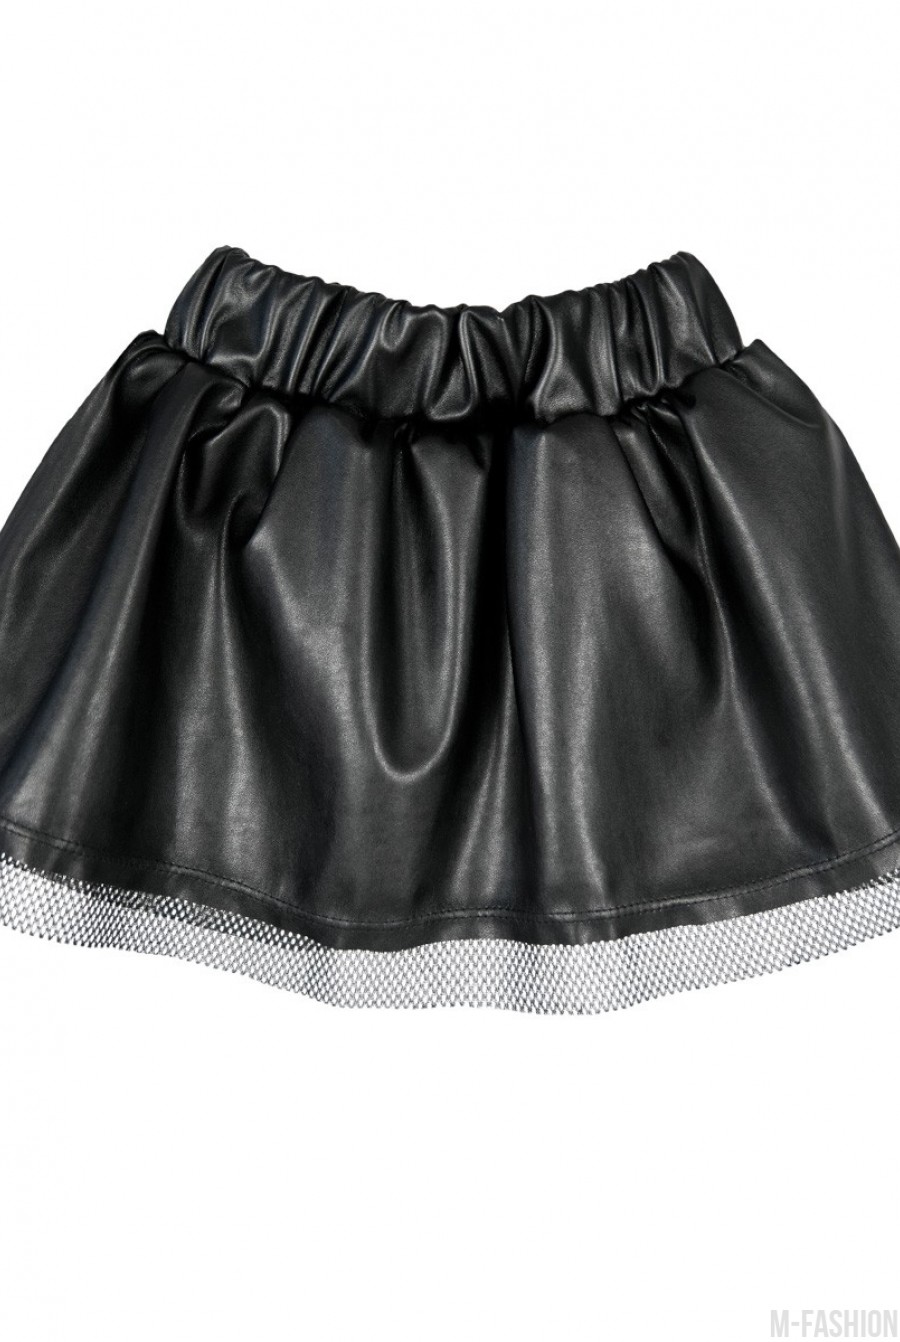 Черная юбка из эко-кожи с фатиновой отделкой - Фото 1